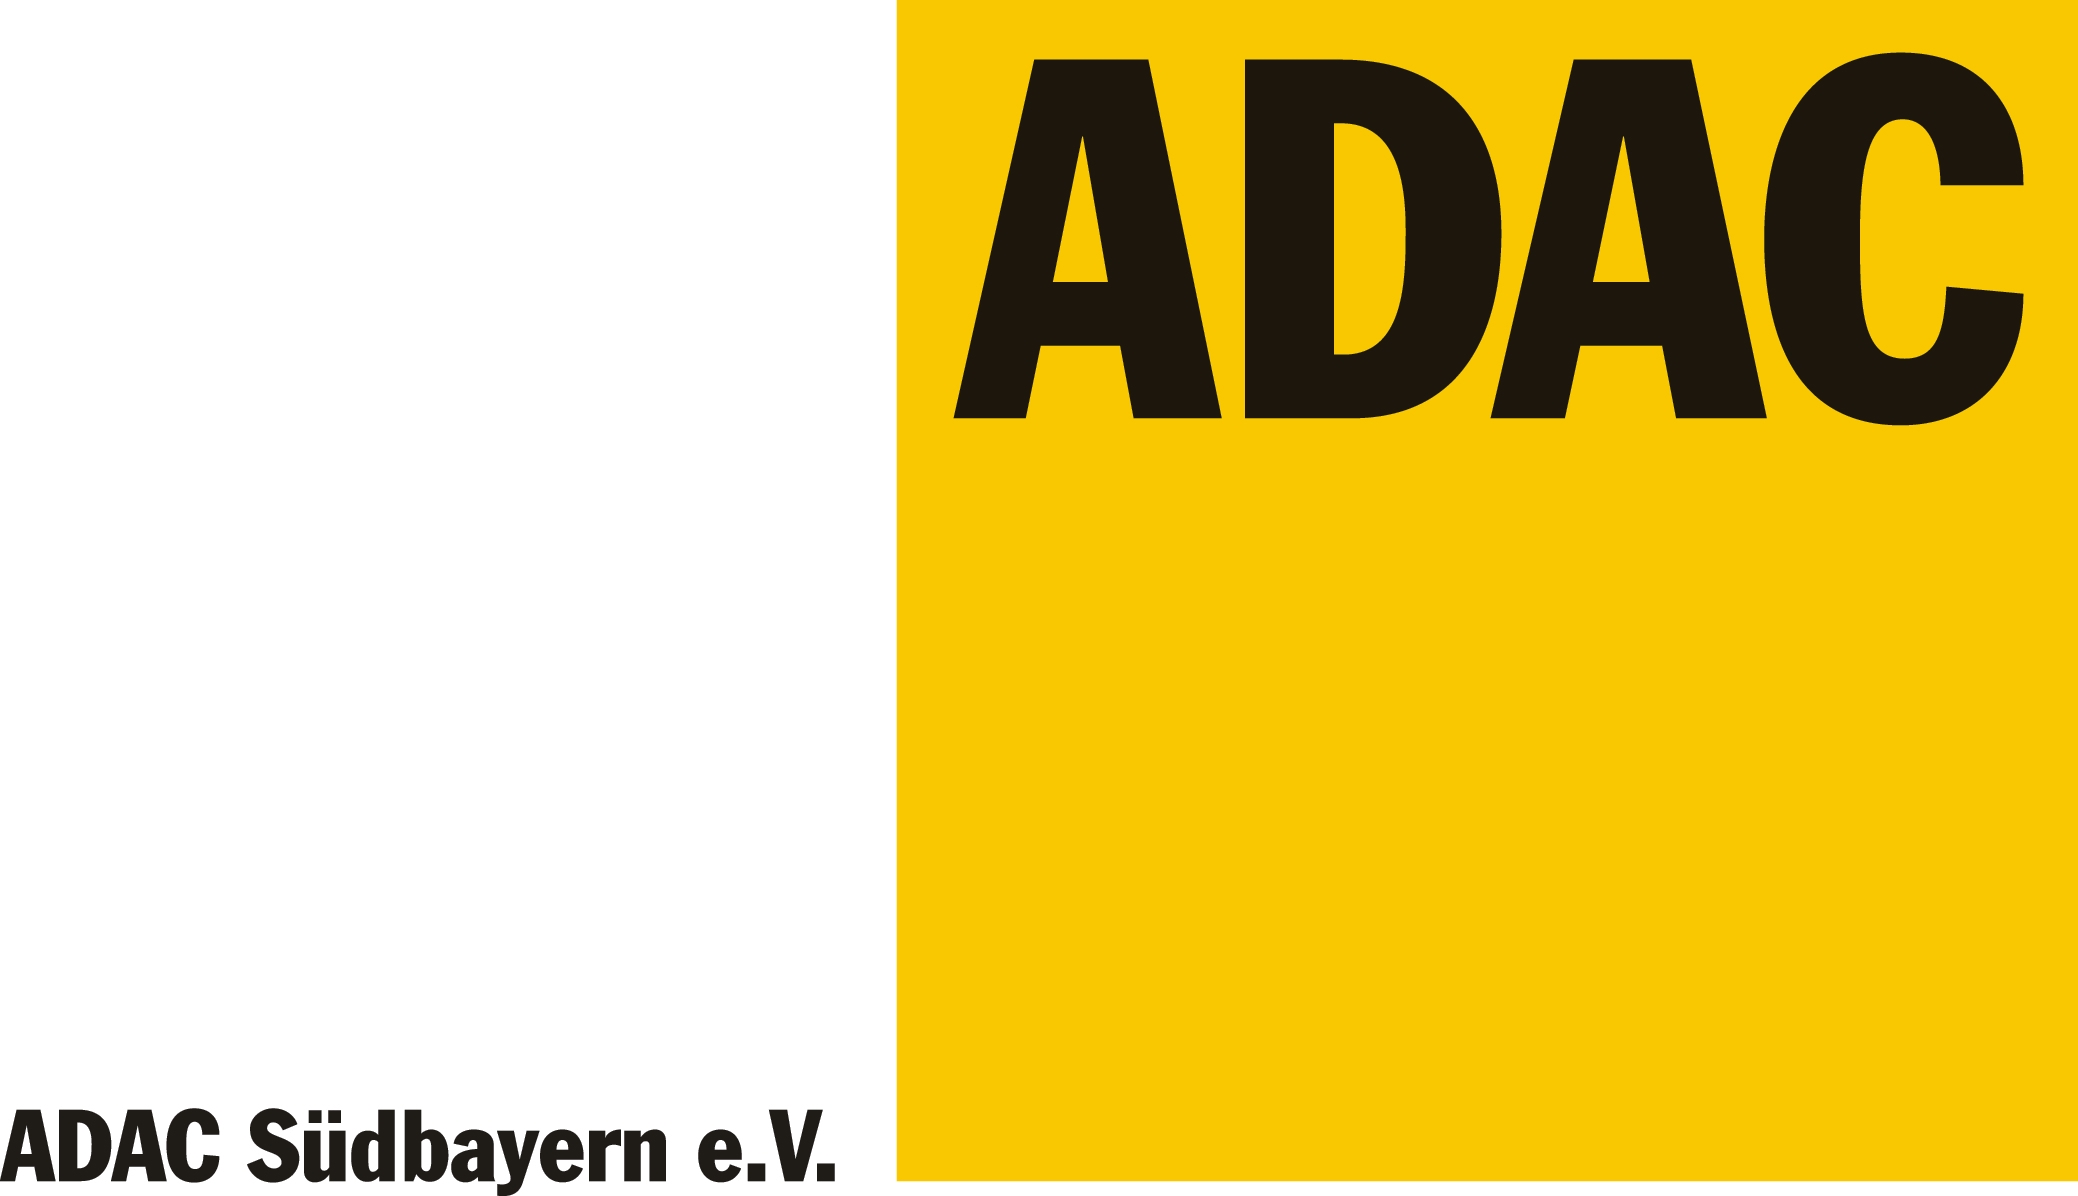 File:Adac logo.png